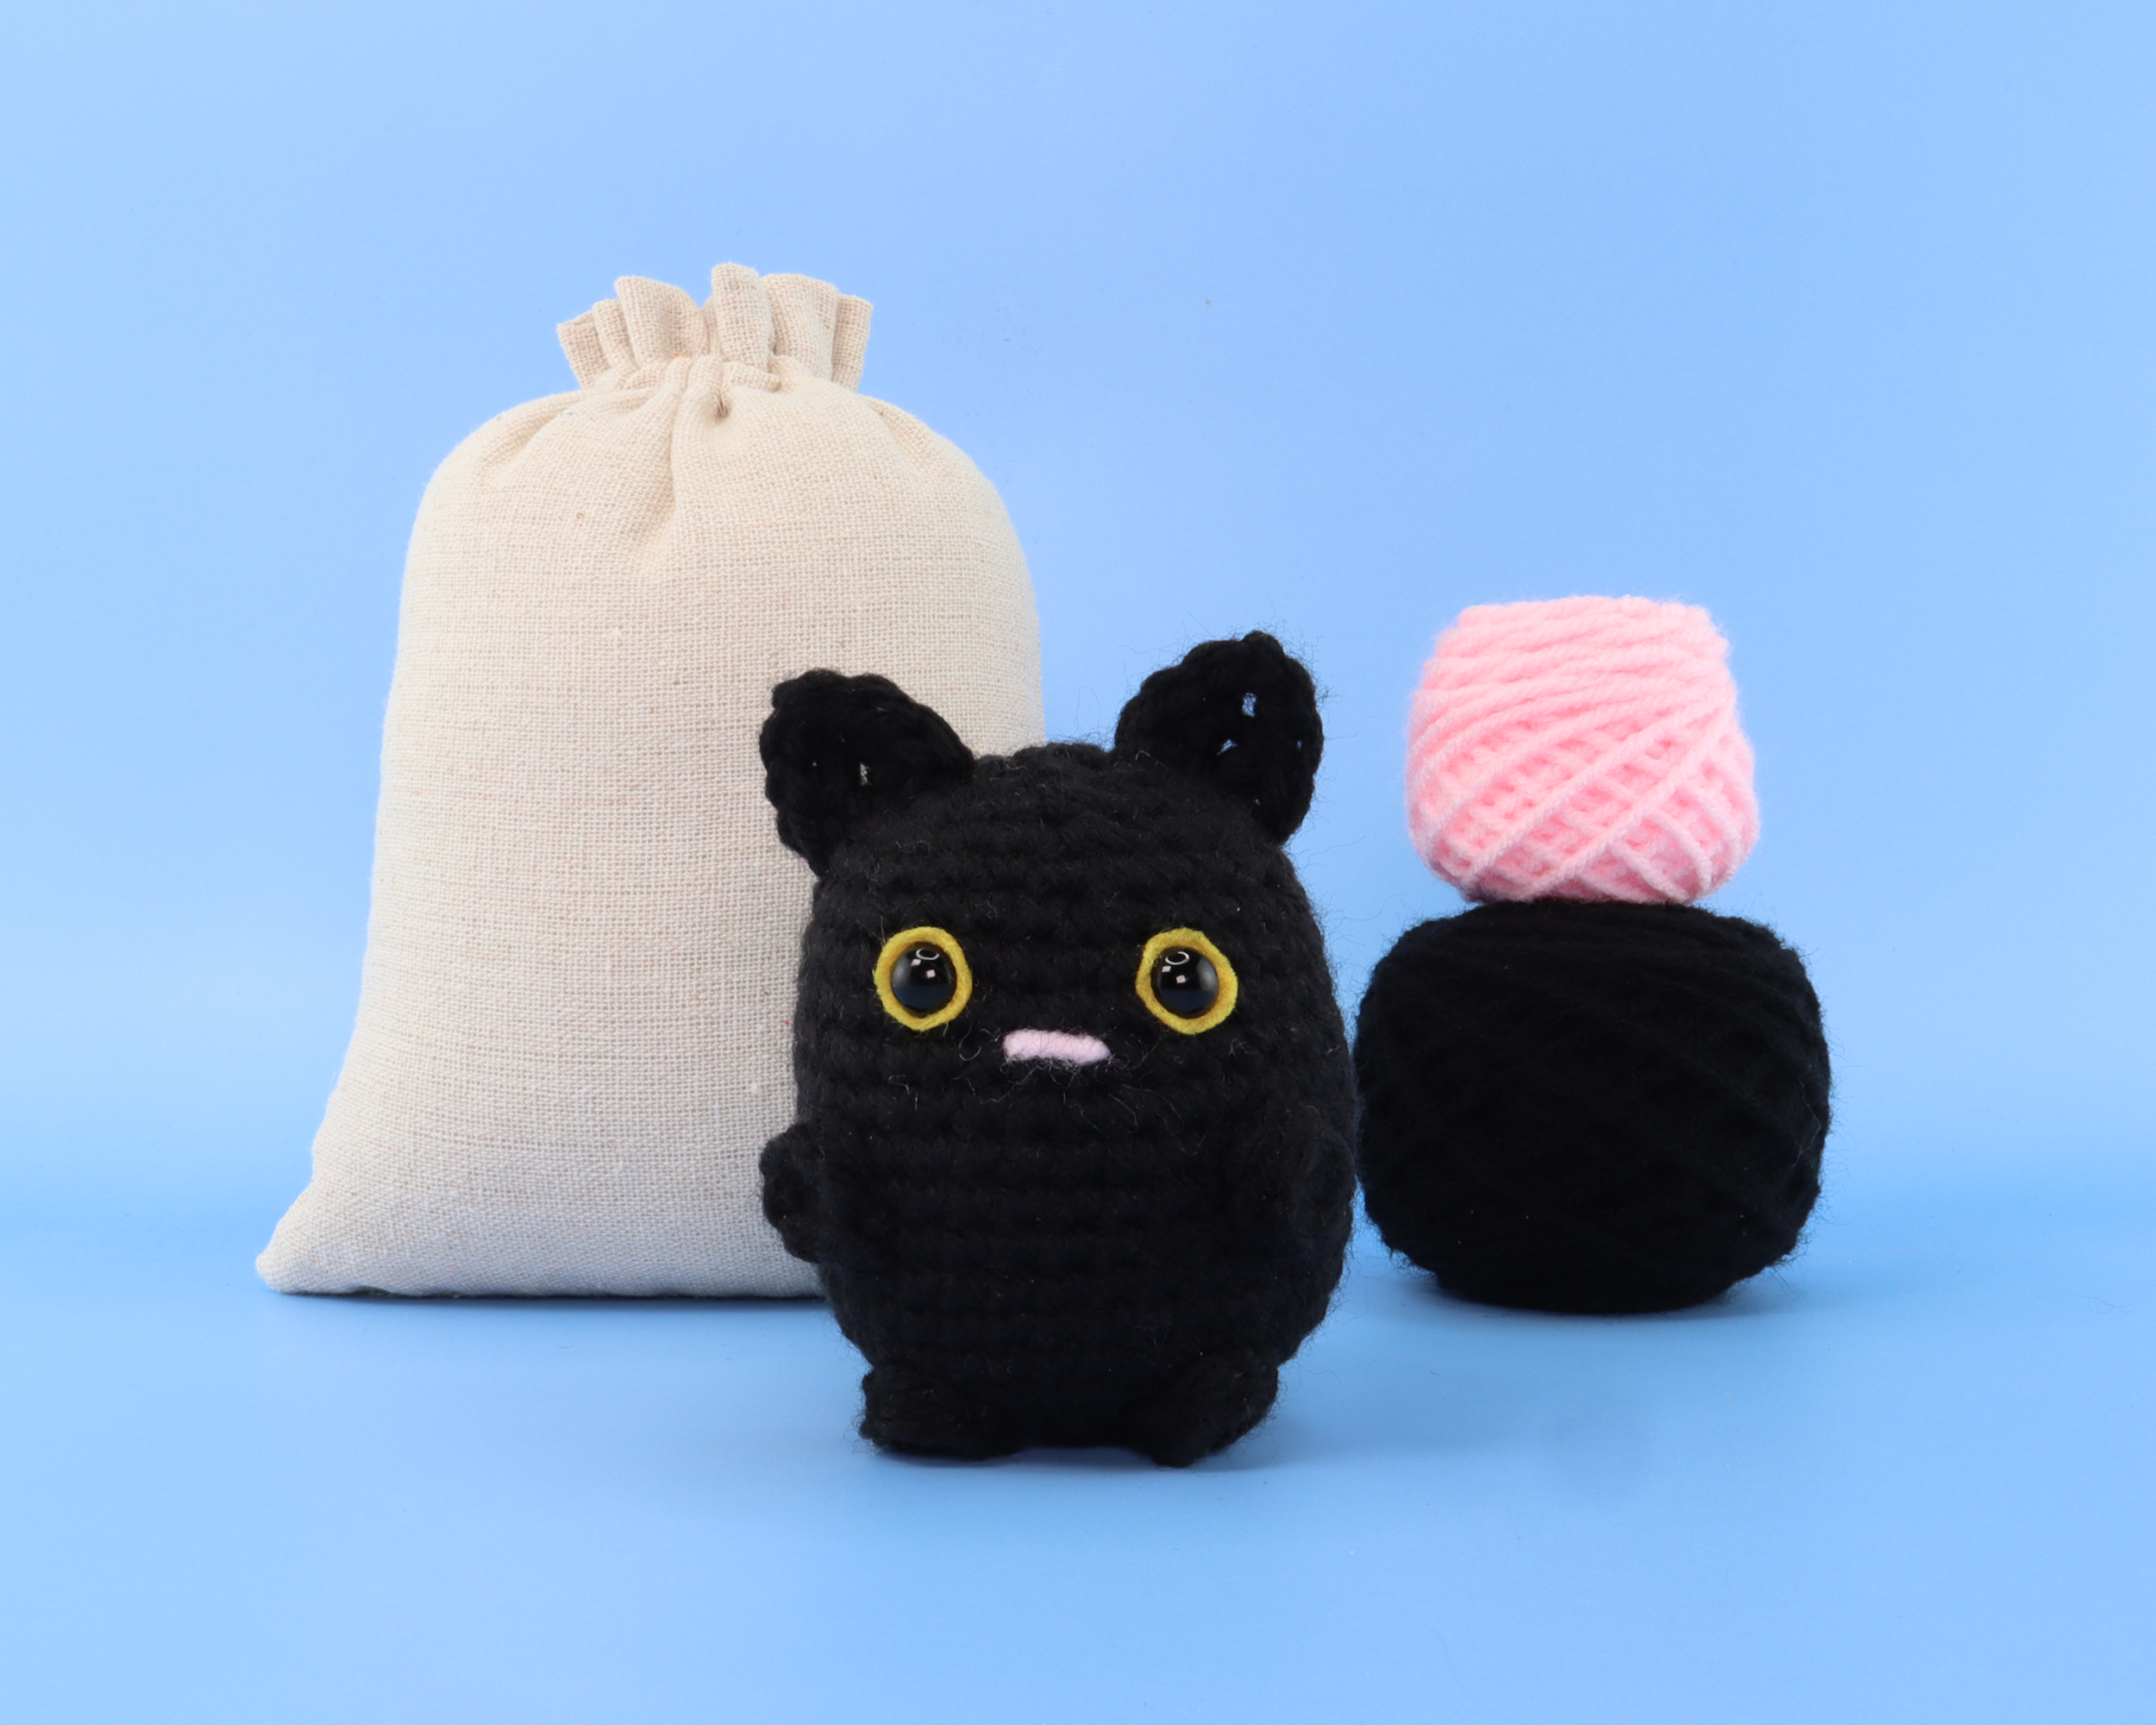 Noir The Black Cat Crochet Kit